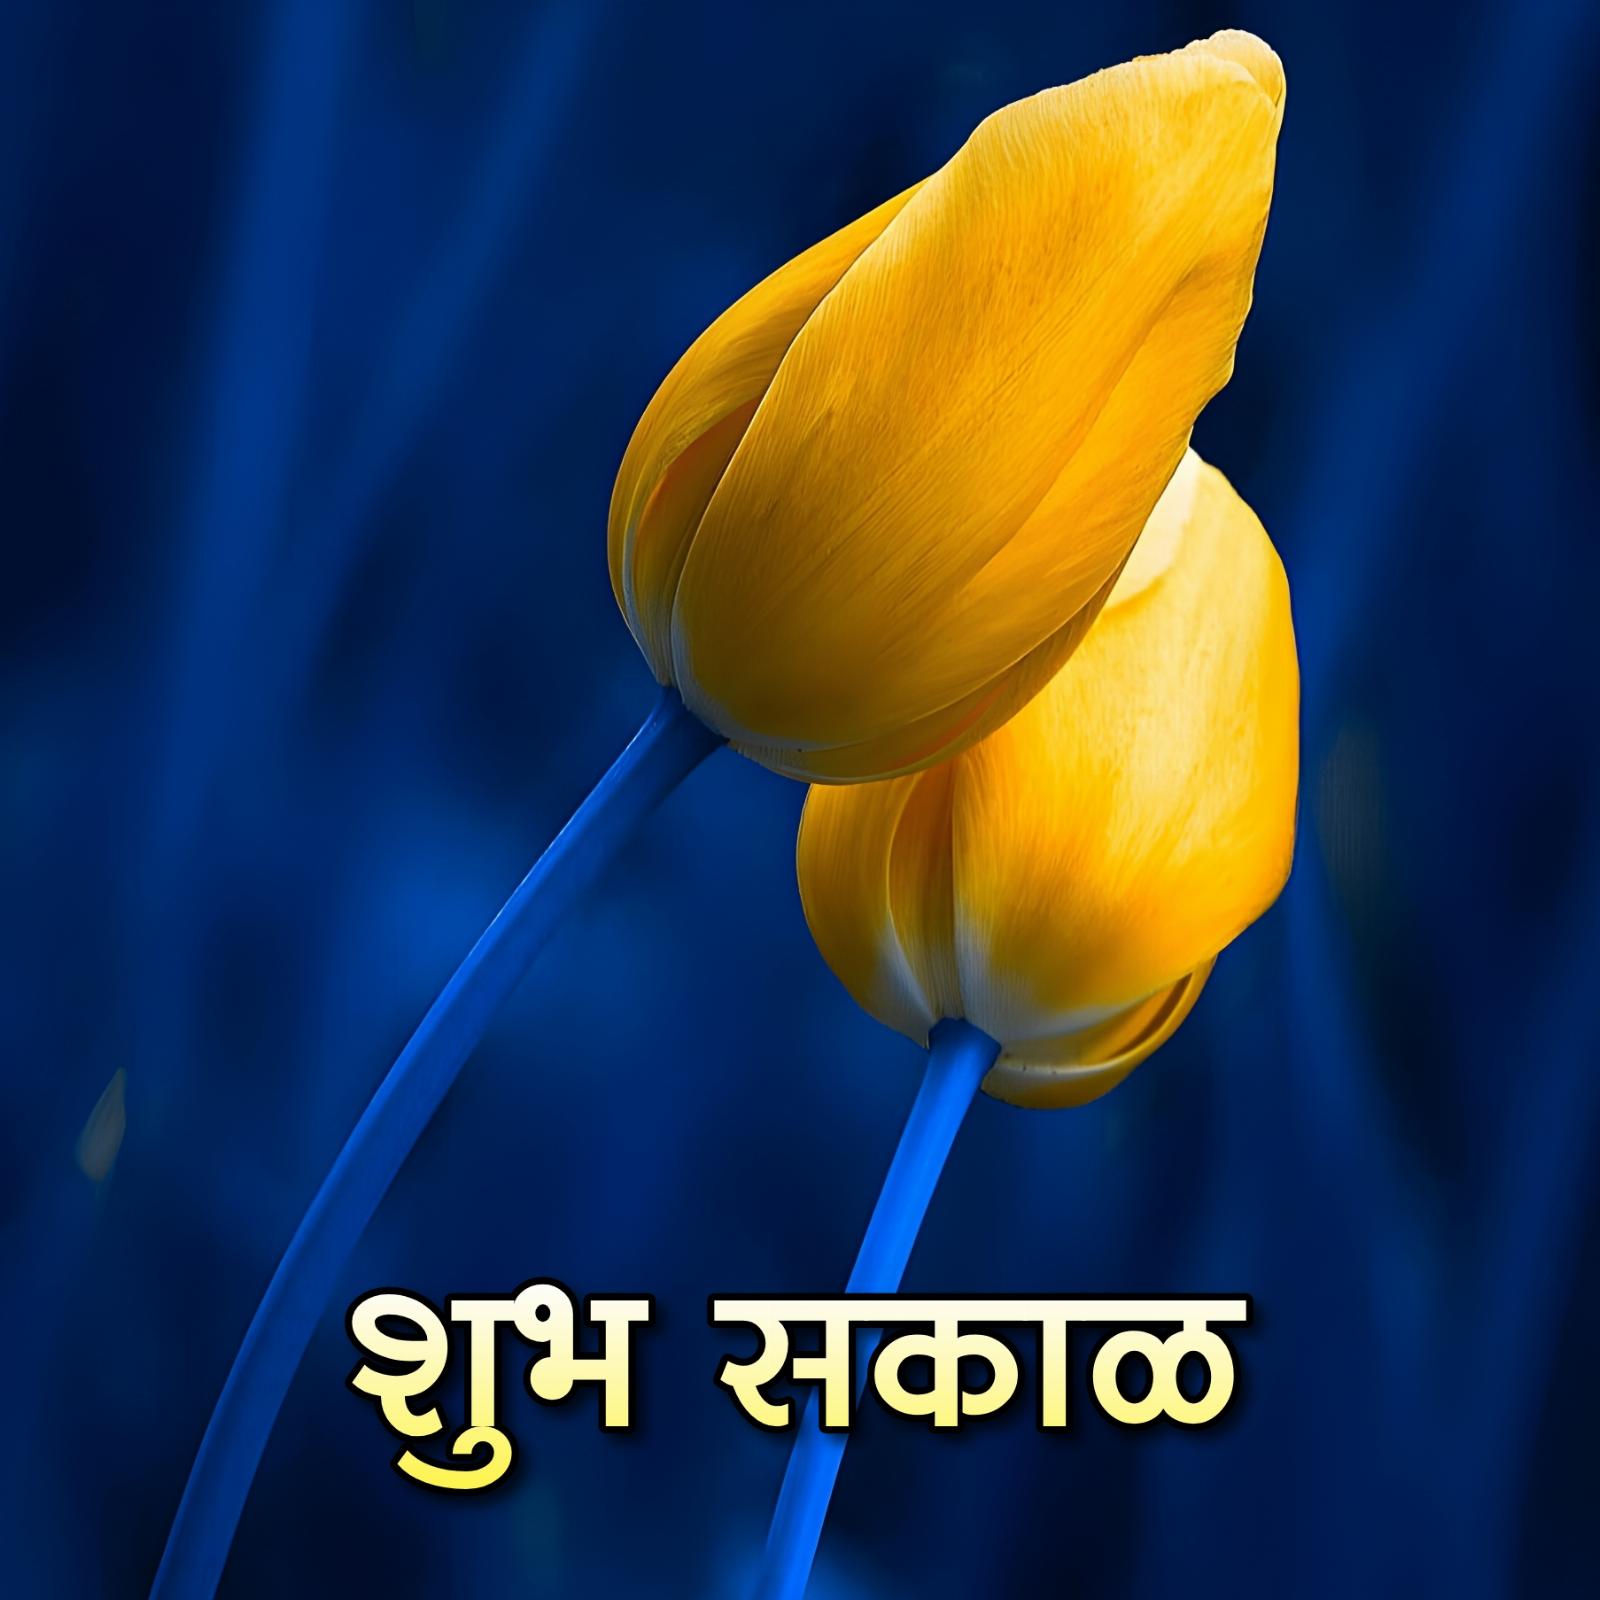 Full Hd Flower Shubh Sakal Images